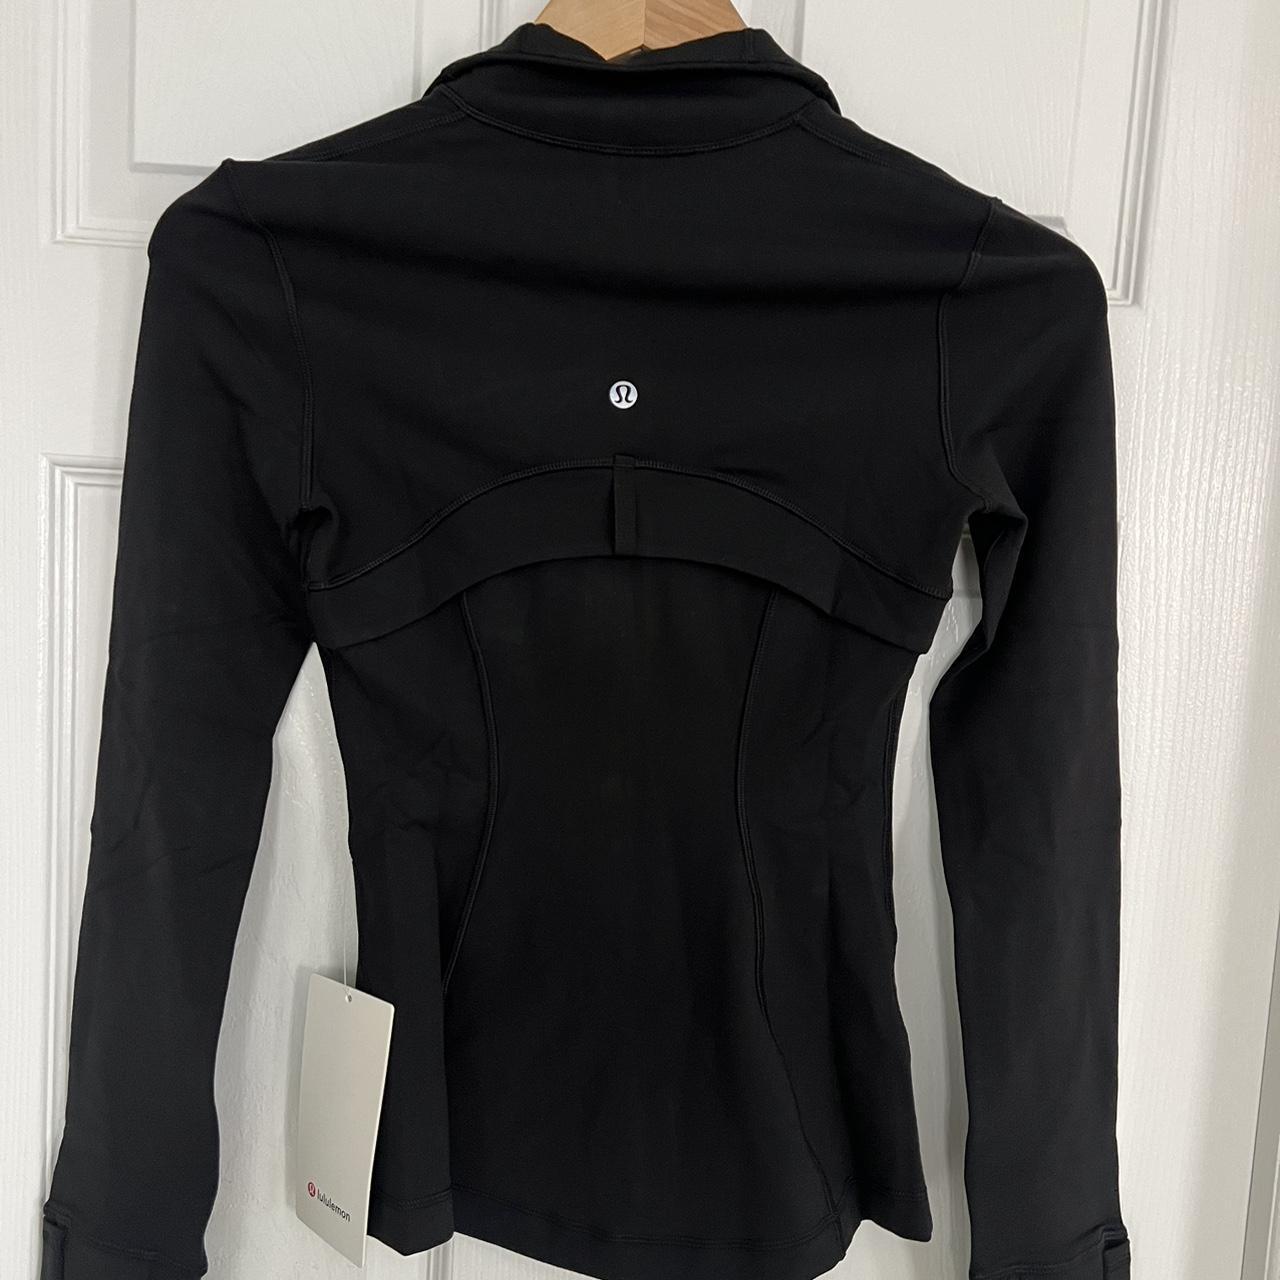 Lululemon Define jacket Luon Color: Black Size 0... - Depop